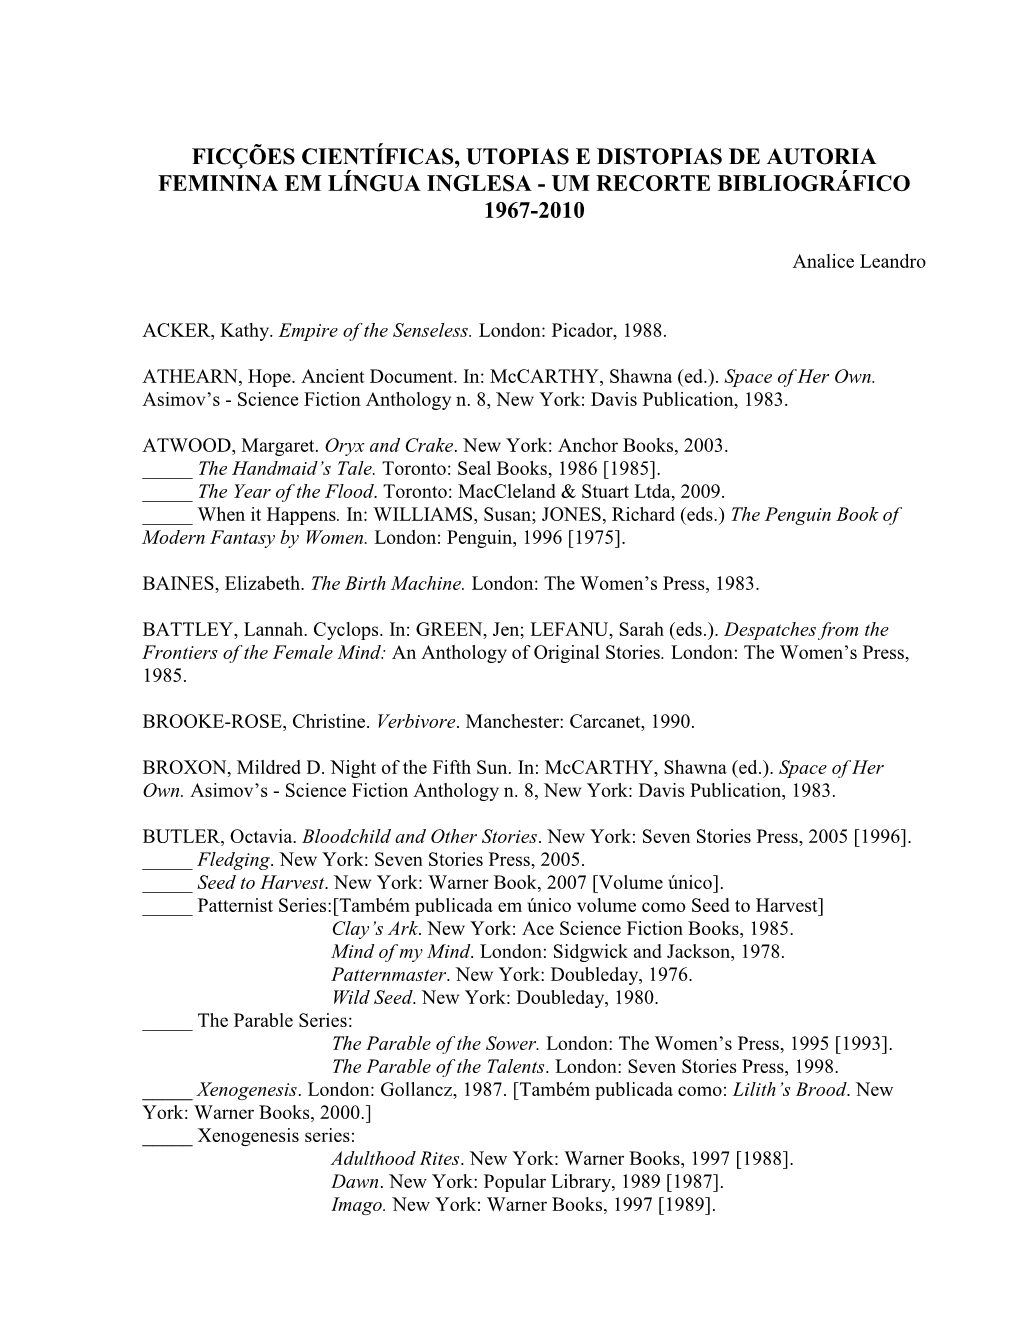 Ficções Científicas, Utopias E Distopias De Autoria Feminina Em Língua Inglesa - Um Recorte Bibliográfico 1967-2010